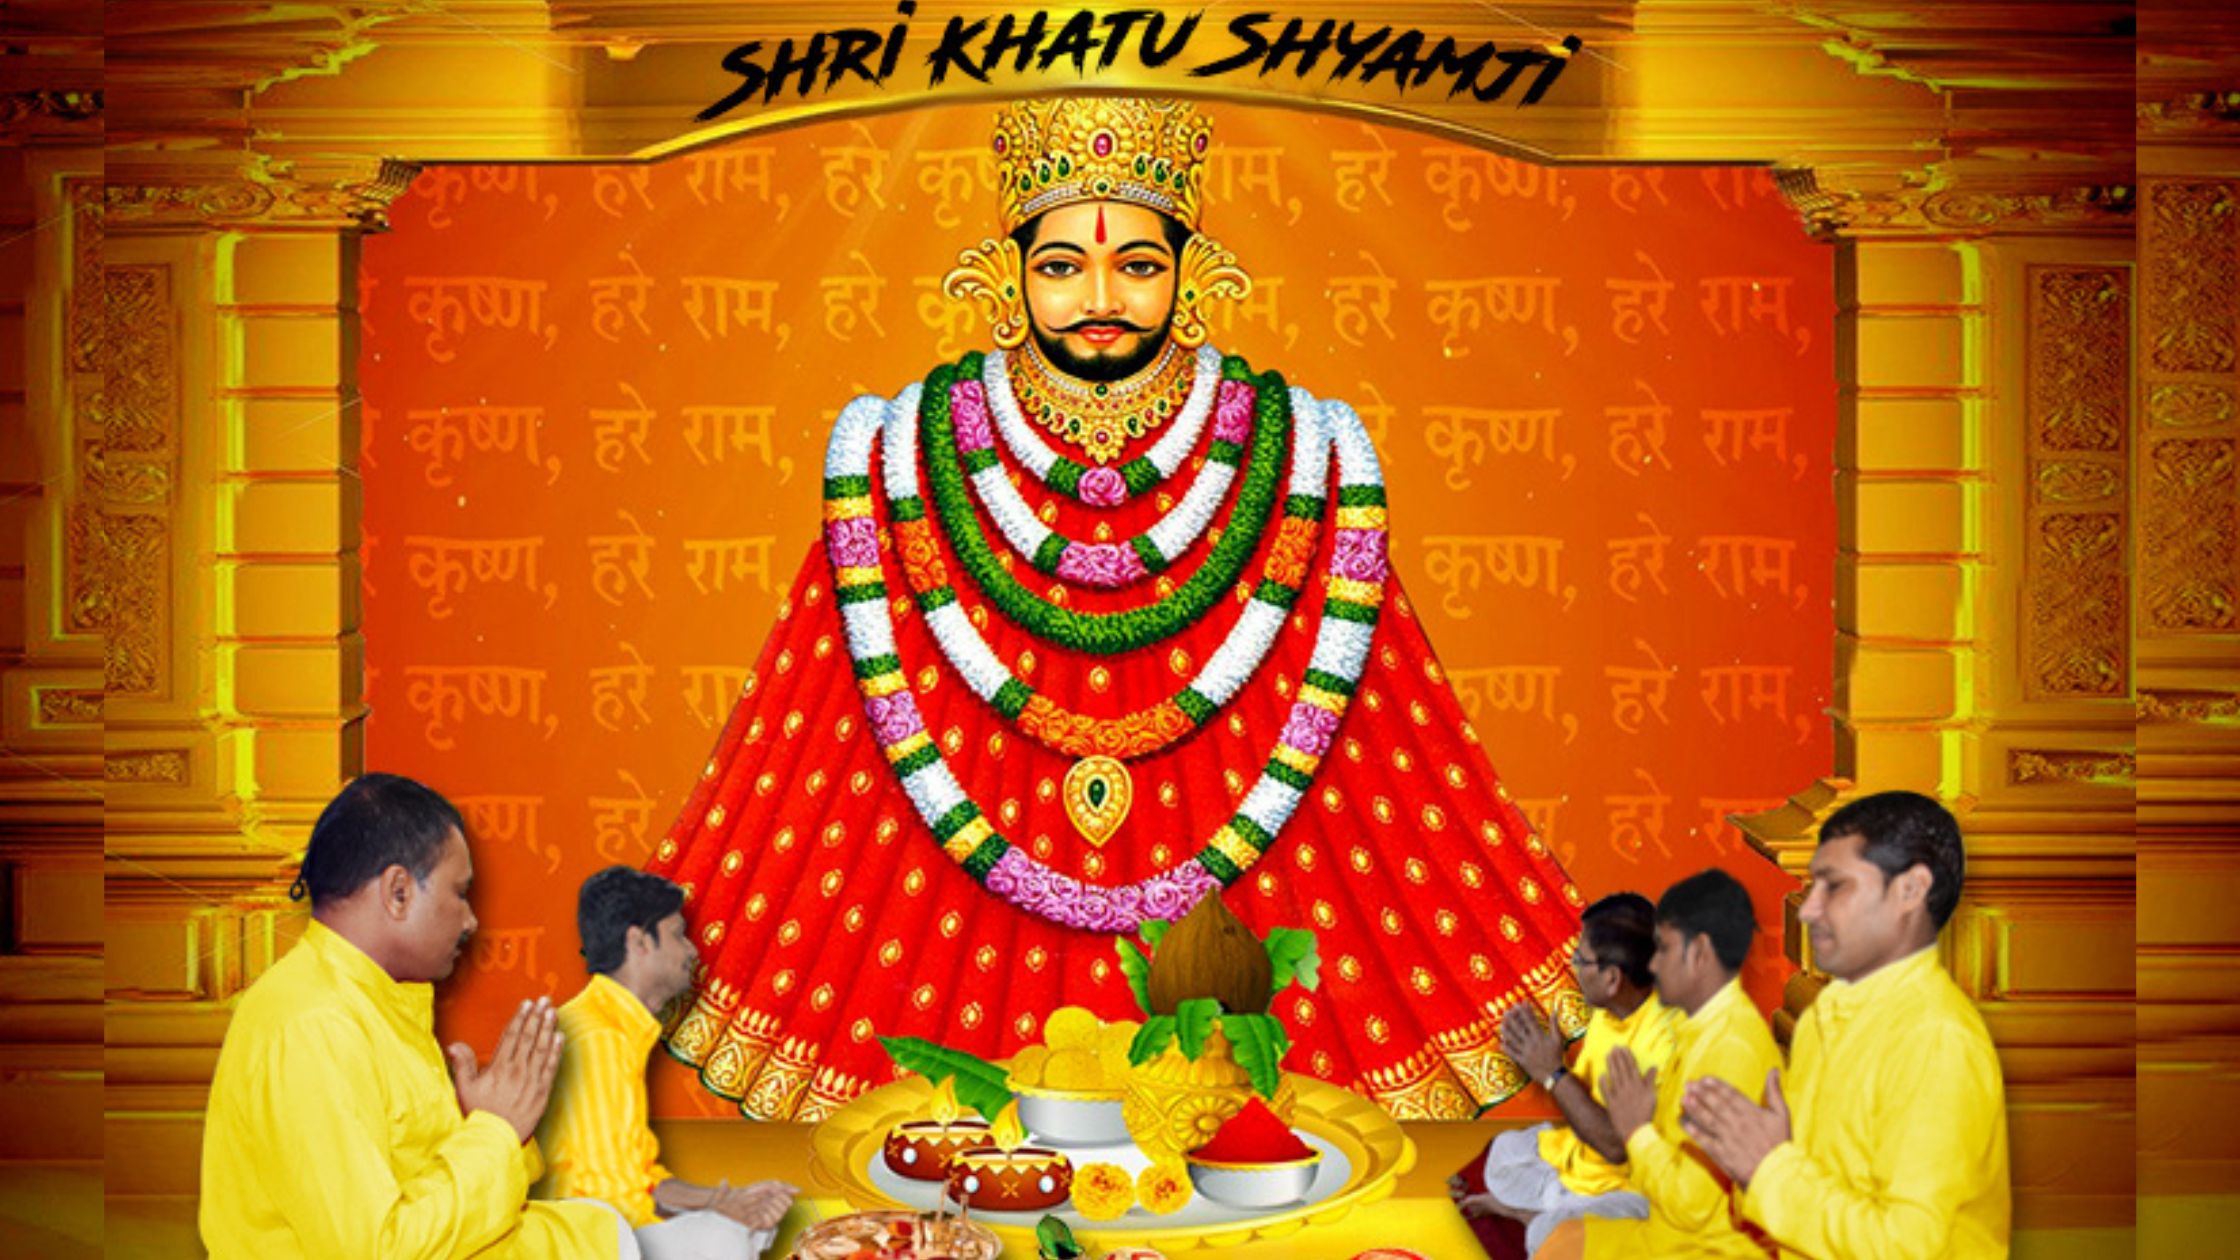 Explore Khatu Shyam Ji Mandir in Sikar – Rajasthan